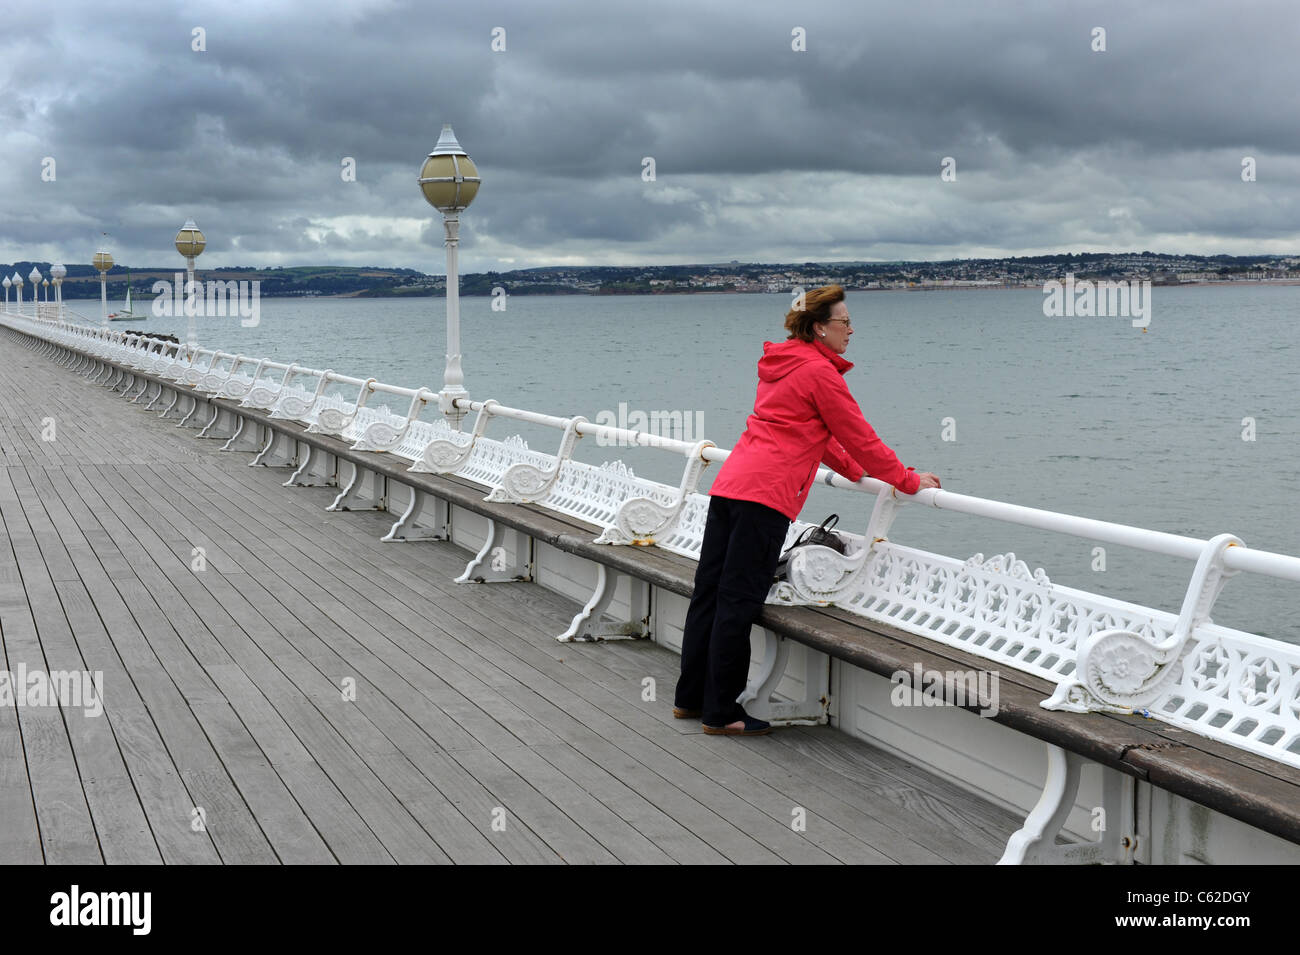 Femme sur la jetée du port de Torquay Devon Royaume-Uni. staycation Grande-Bretagne Angleterre Banque D'Images